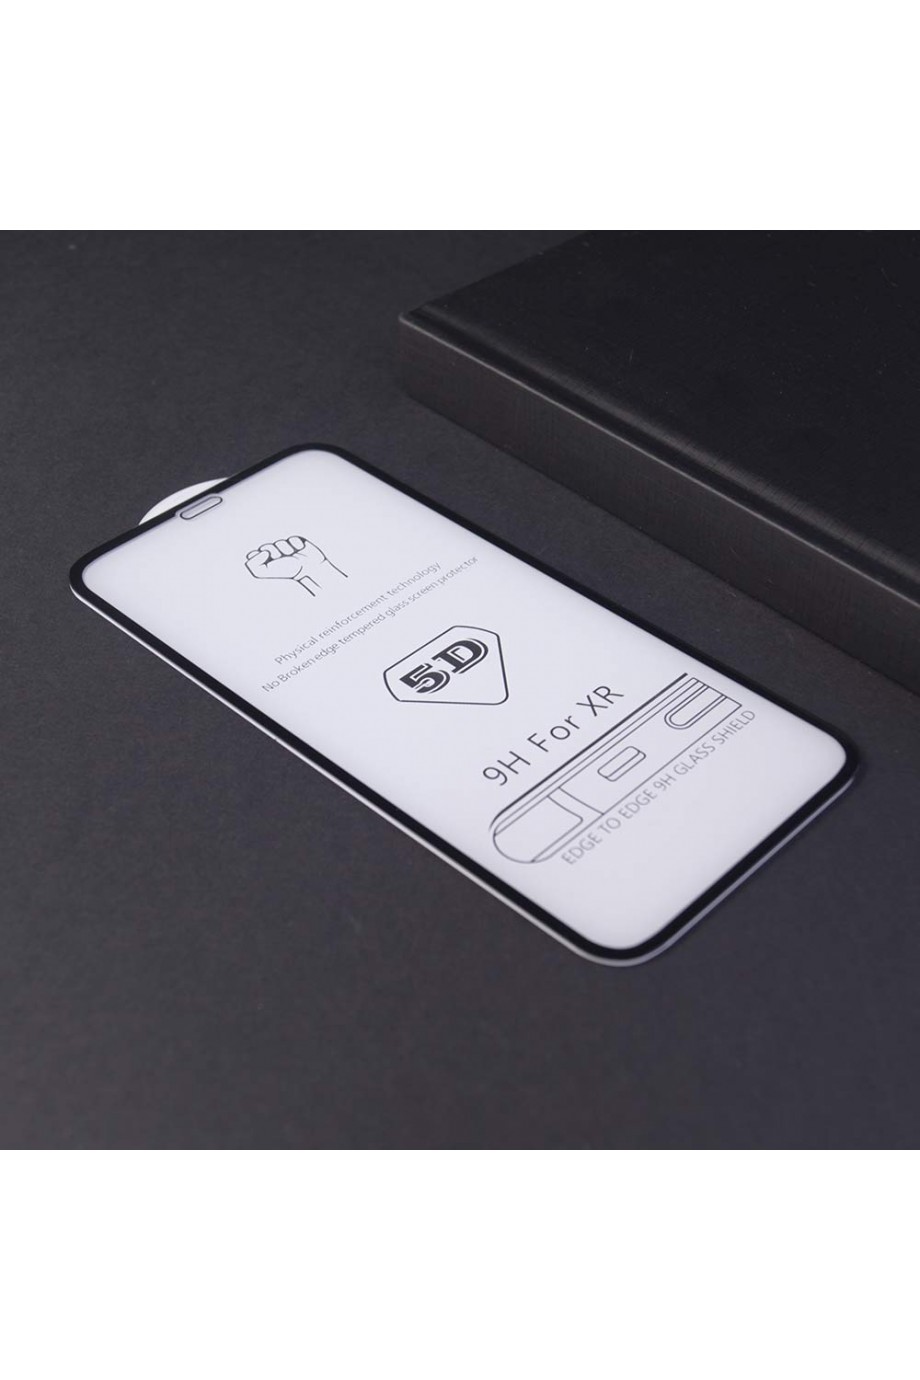 Защитное стекло 5D Mikomo для iPhone XR, черная рамка, полный клей